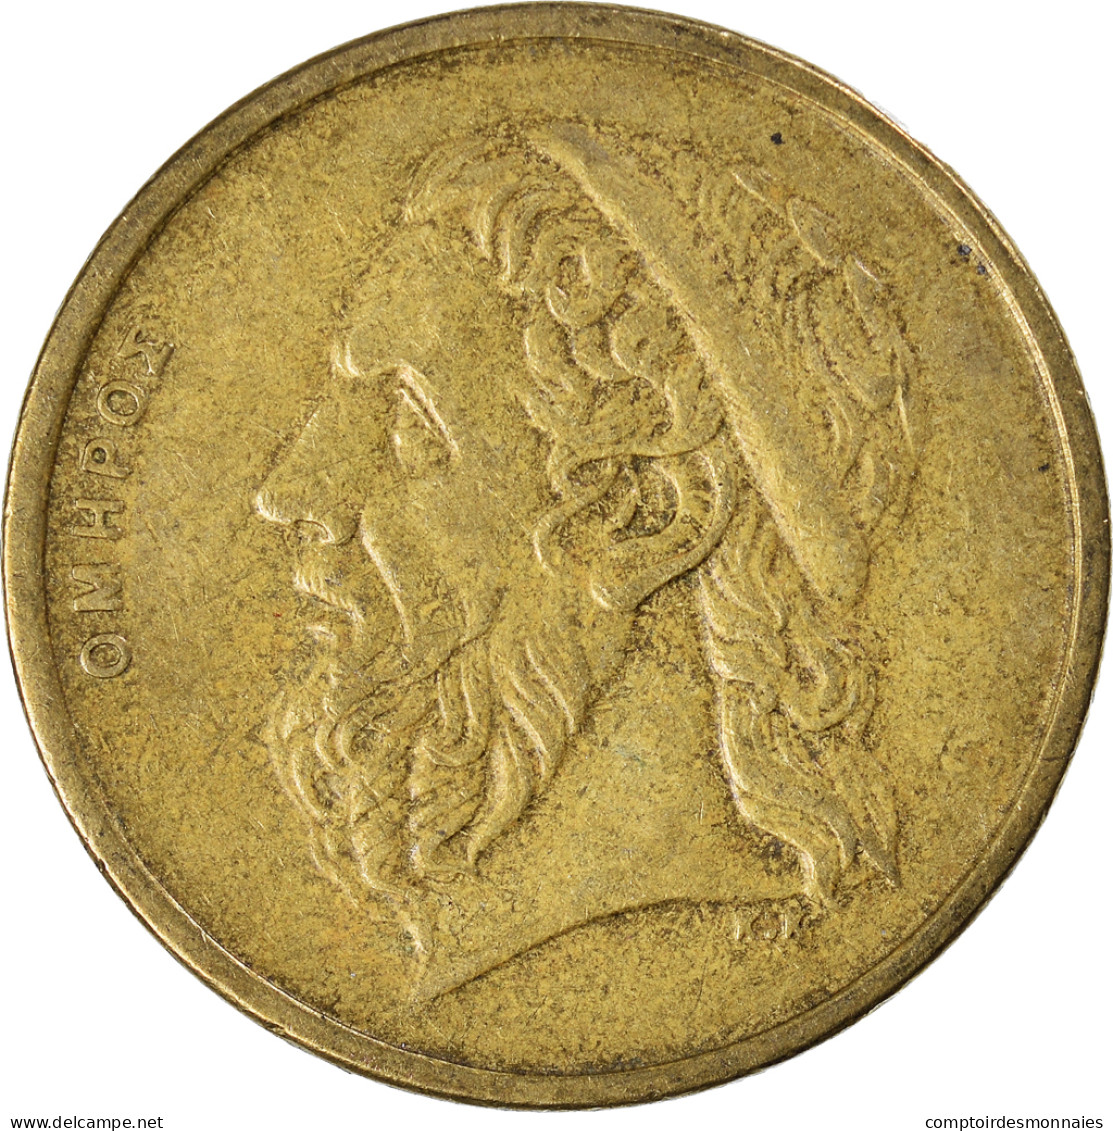 Monnaie, Grèce, 50 Drachmes, 1990 - Greece